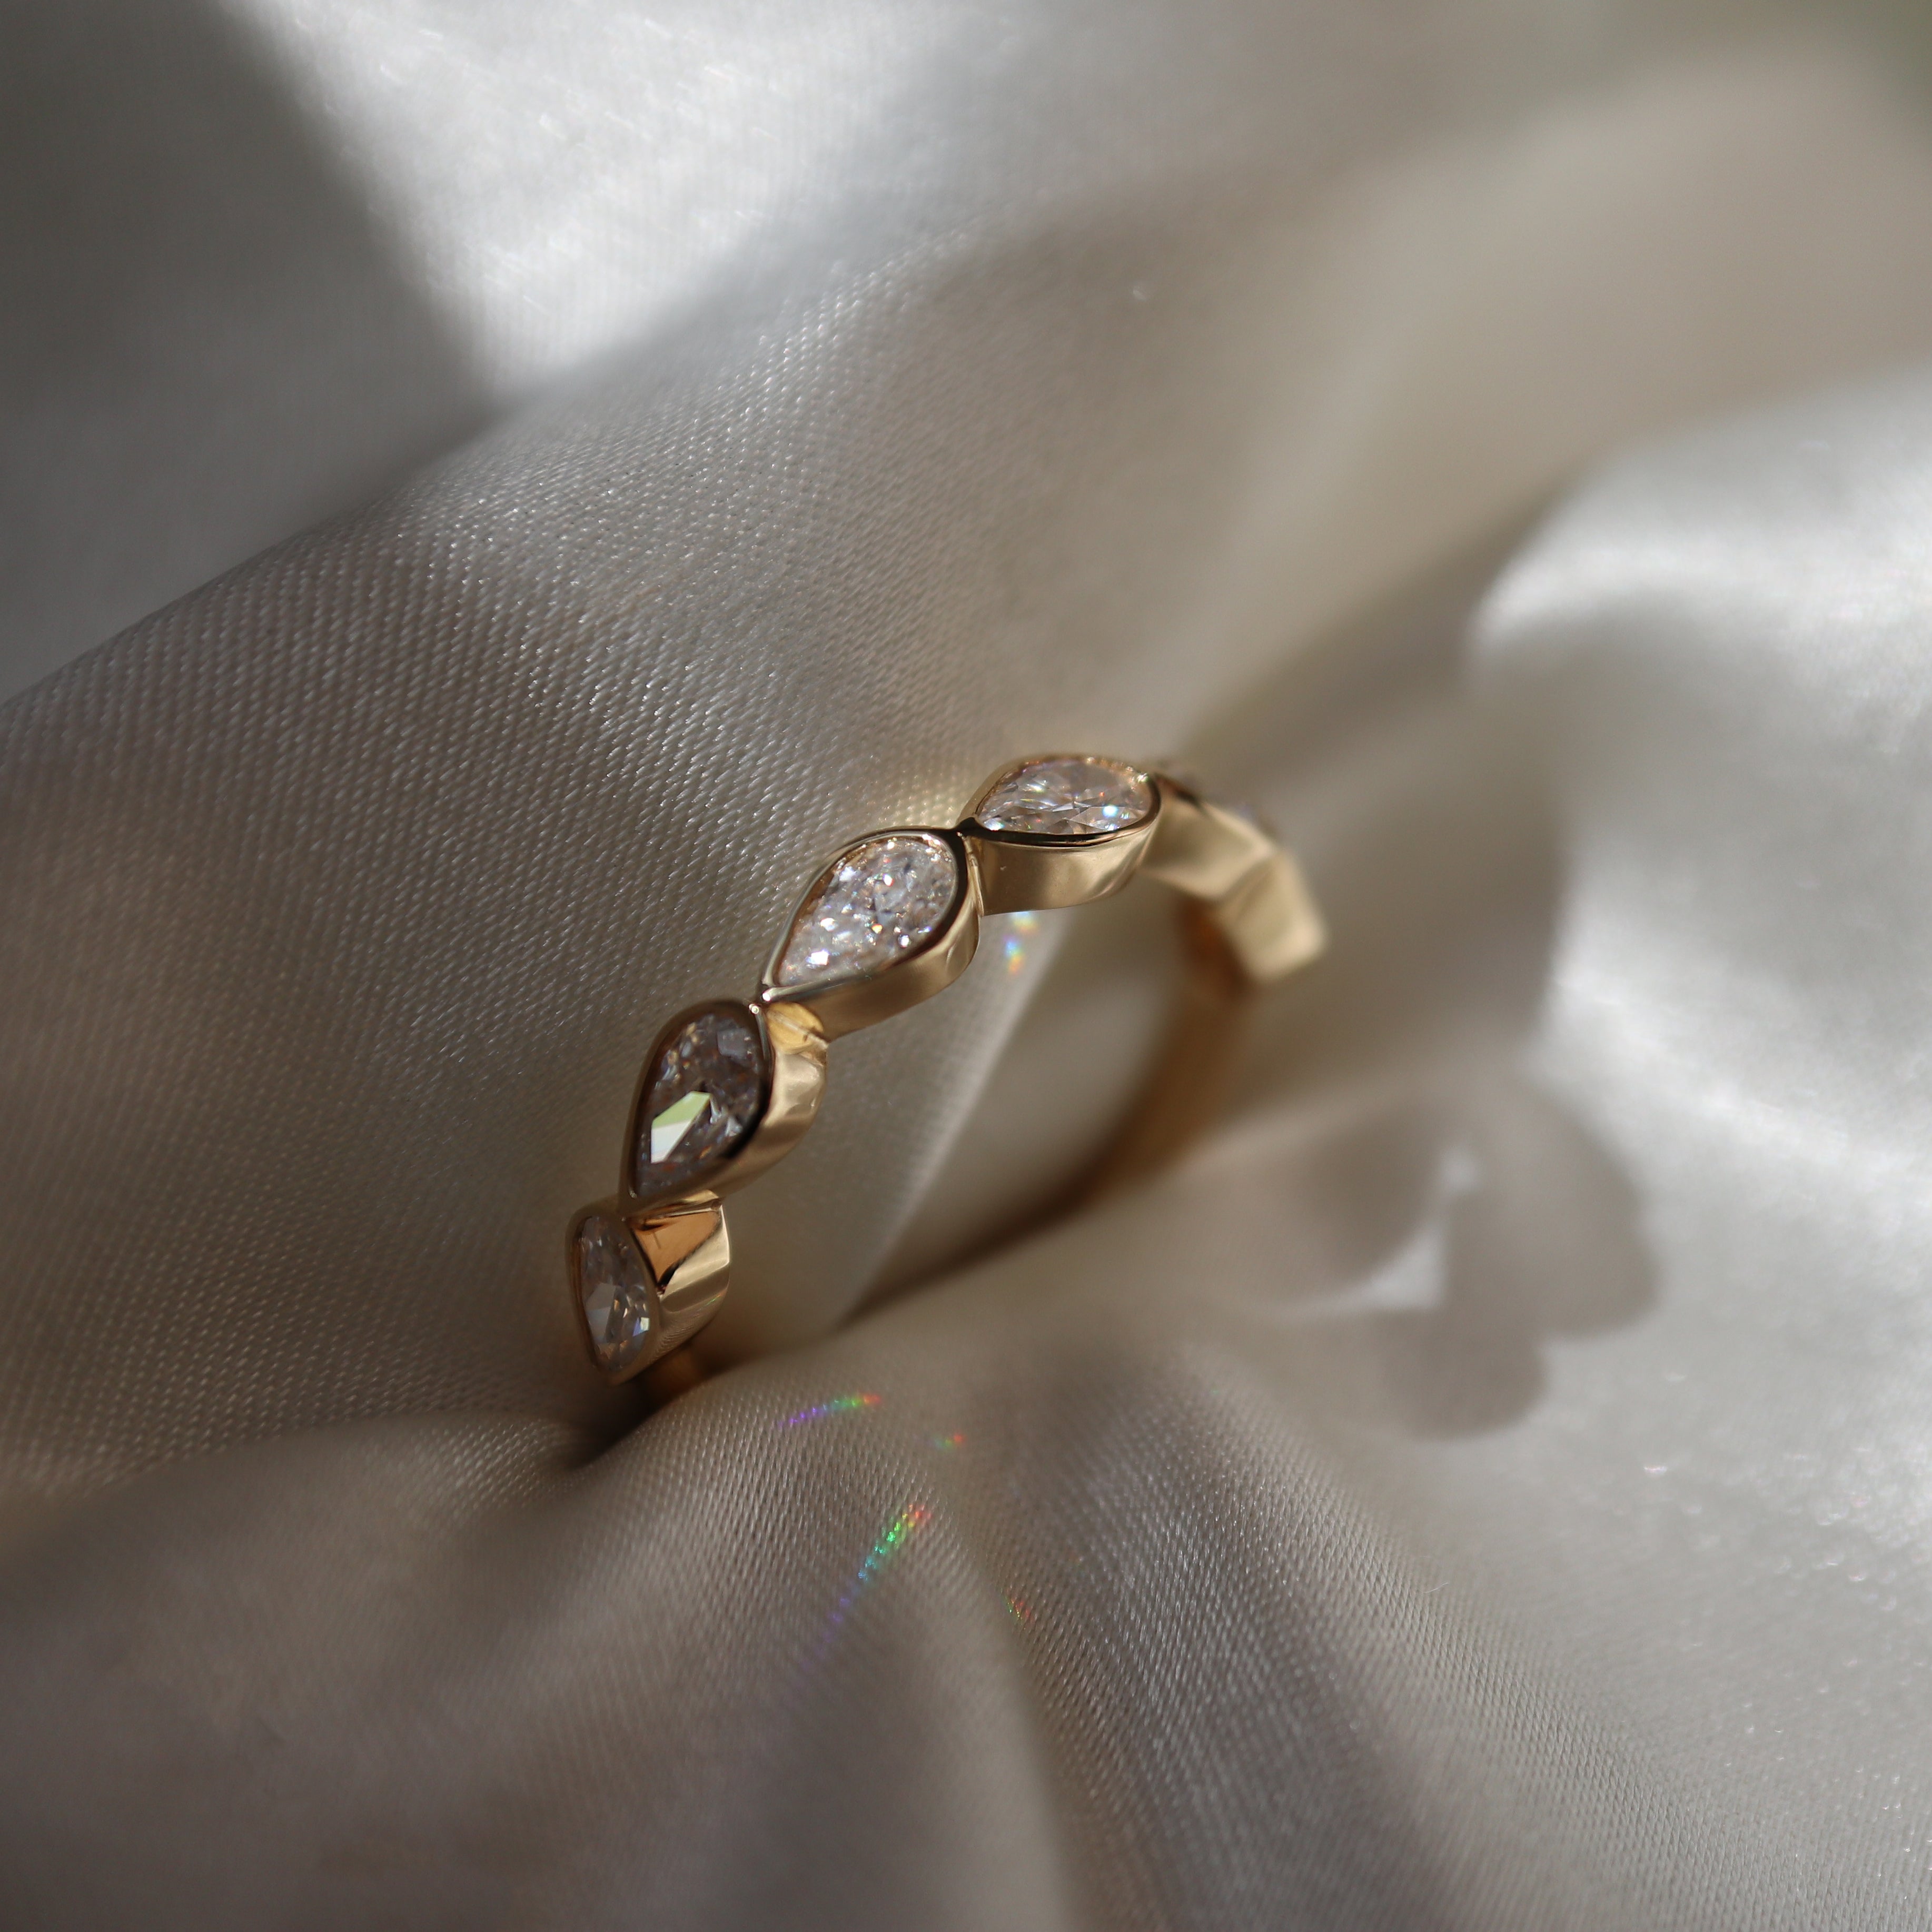 The Harper Pear Bezel Ceremonial Ring